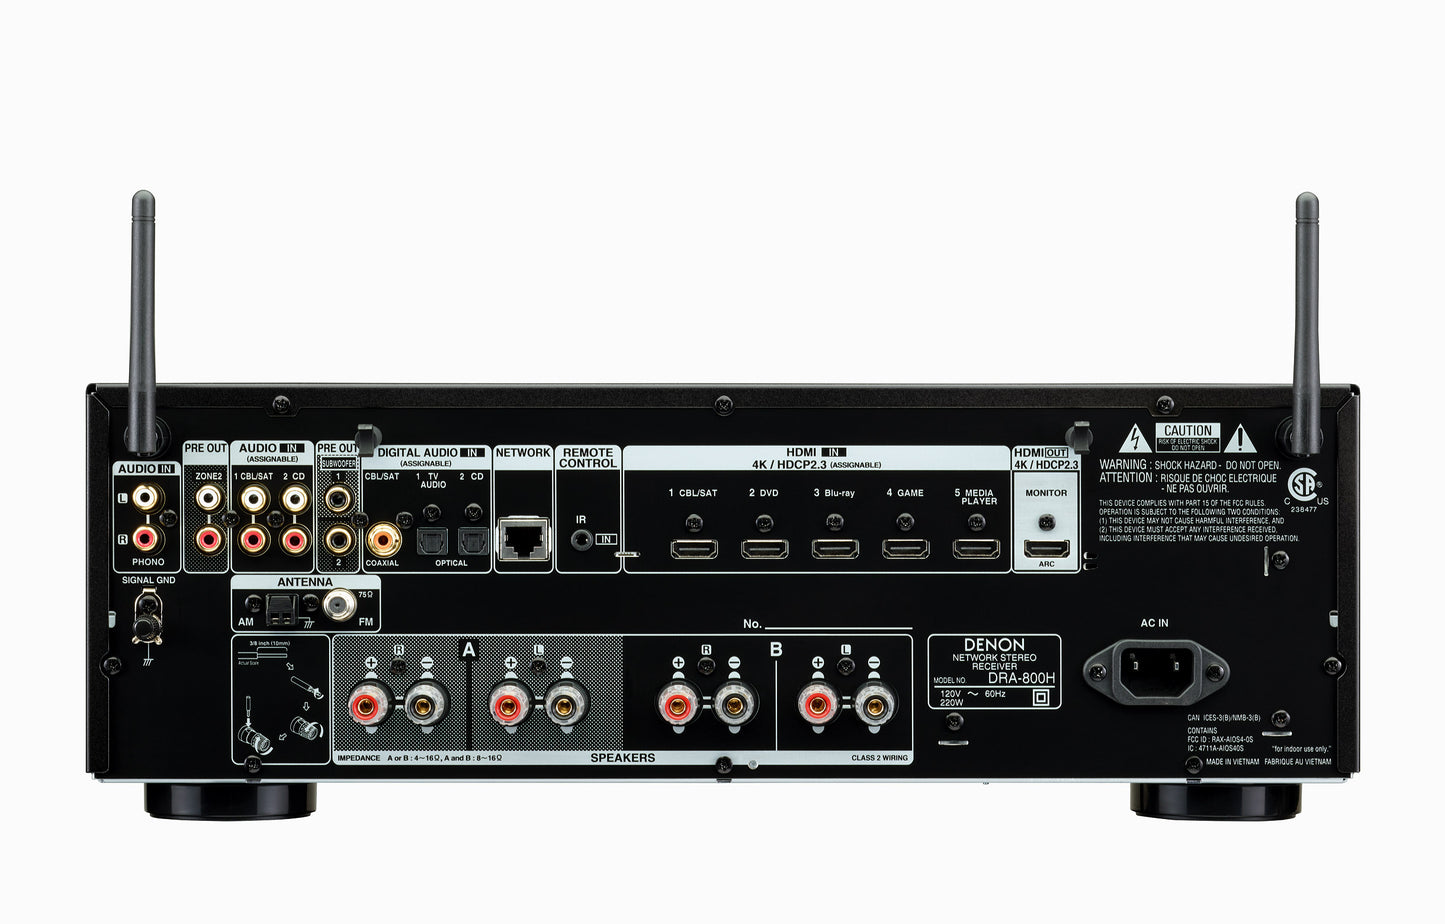 DENON DRA-800H (2019) Stereo Network Receiver